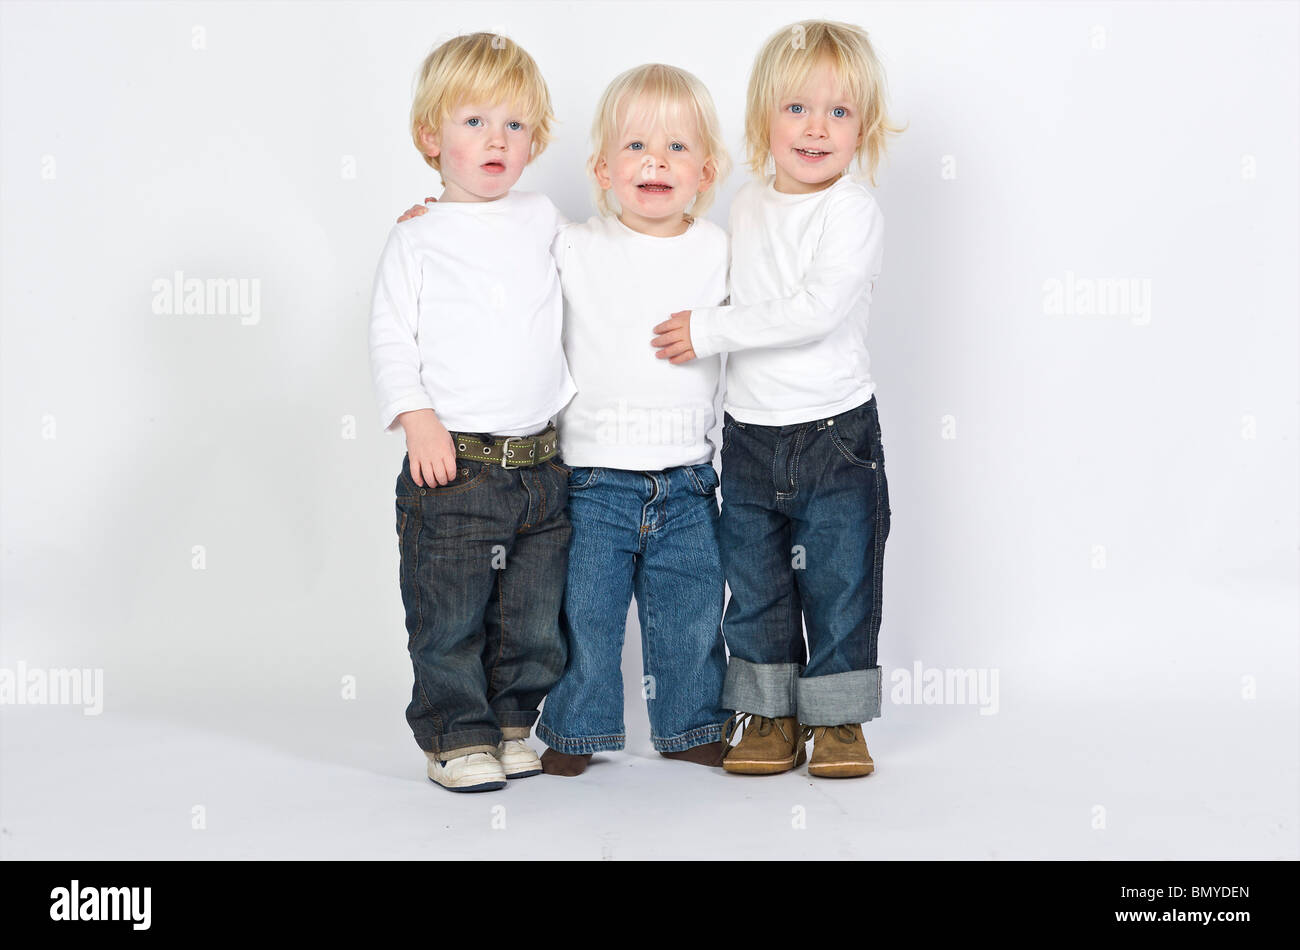 2-3 ans 3-4 ans blonde attitude bleu garçon caucasien enfant ethnie ethnique néerlandais enfants europa europe european eye frien Banque D'Images